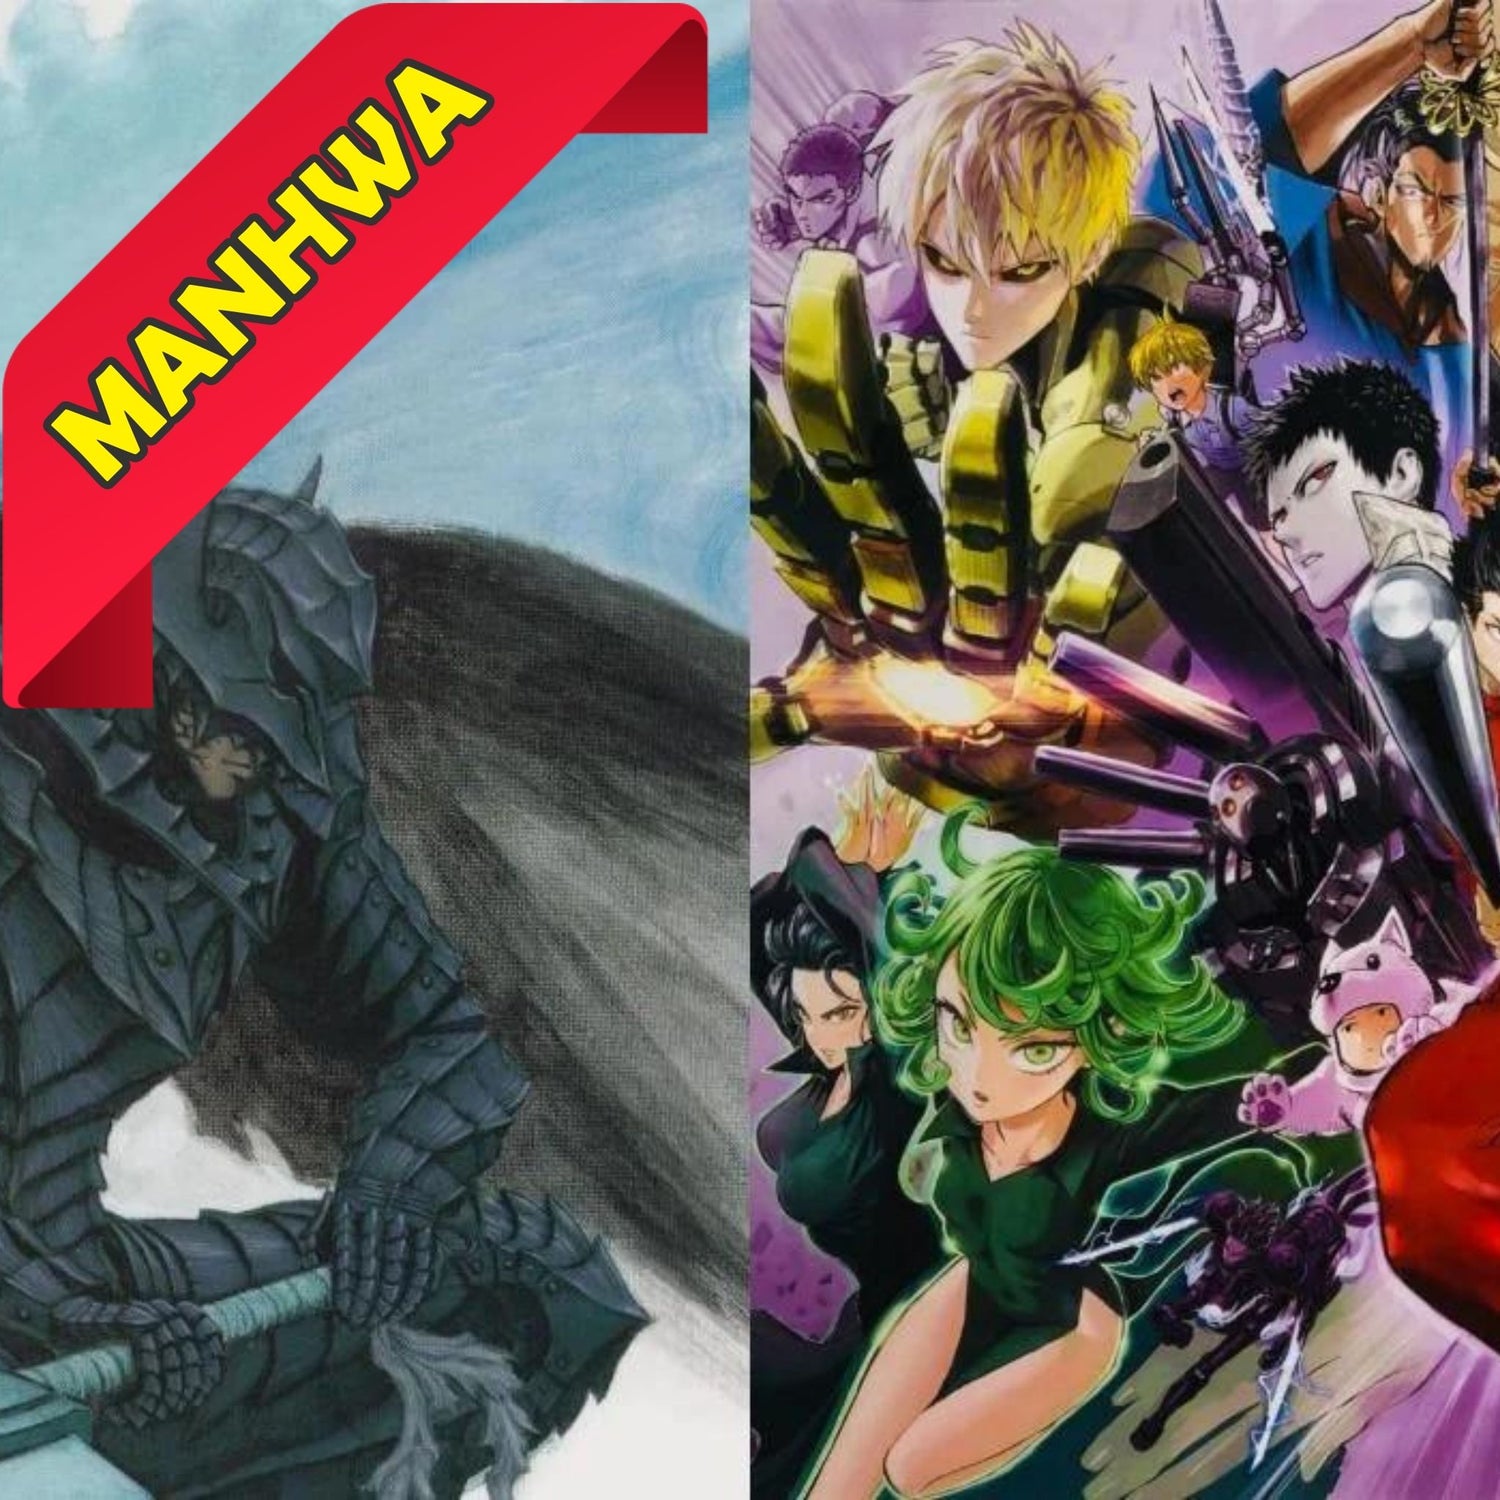 Manga Cash propose une grande variété de Manhwa d'occasion de qualité à prix abordables